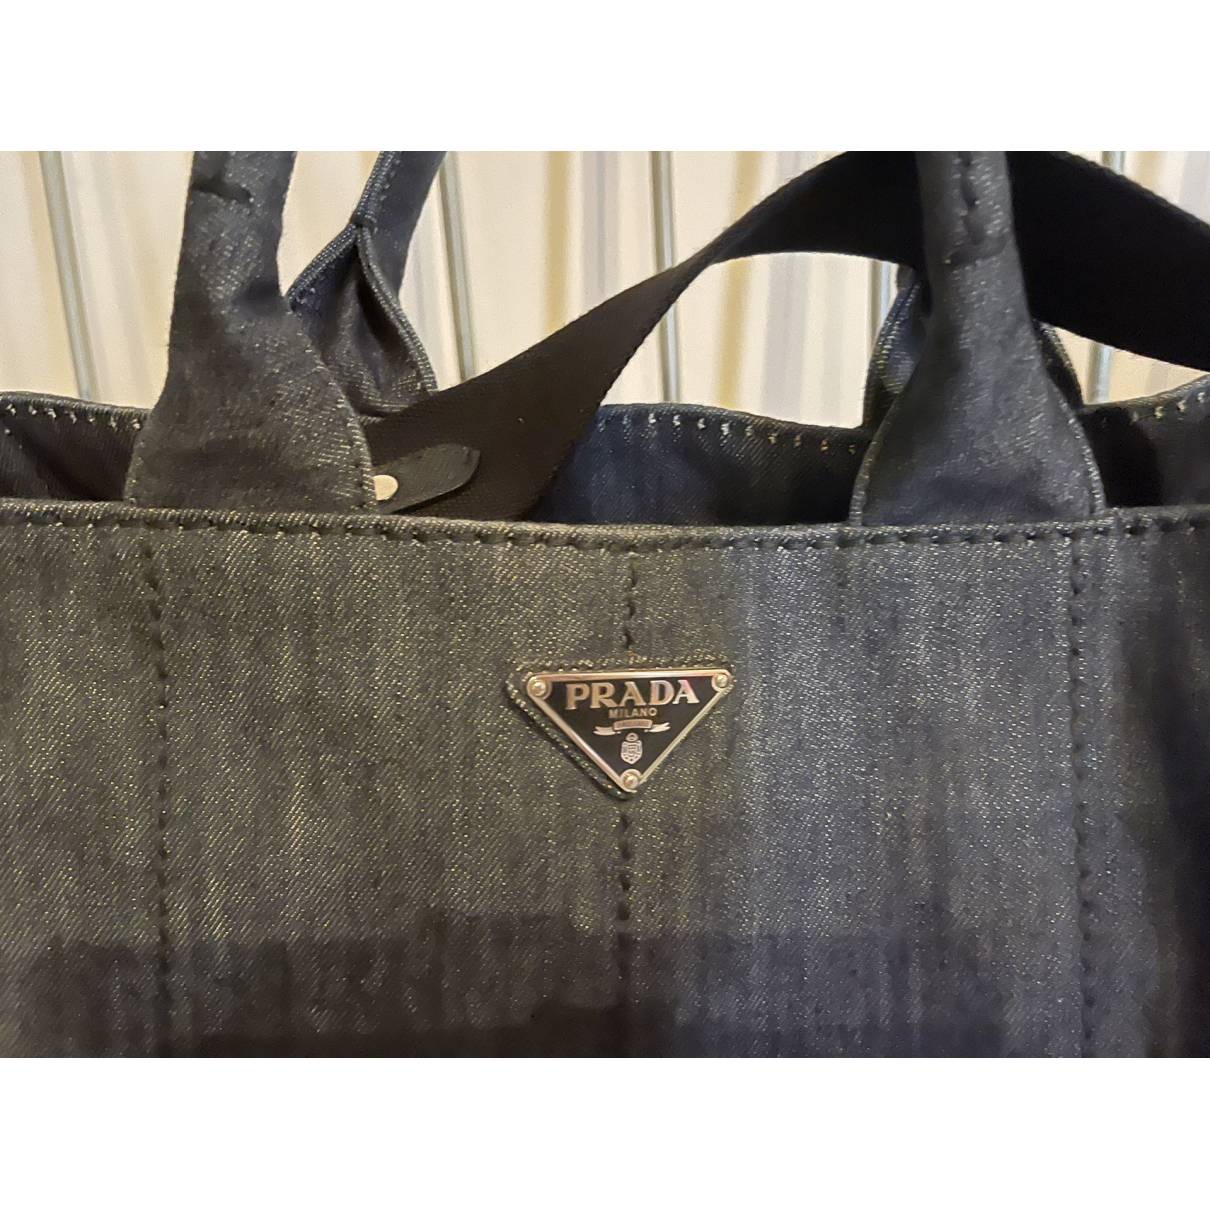 Prada - Authenticated Concept Handbag - Cloth Blue Plain for Women, Very Good Condition